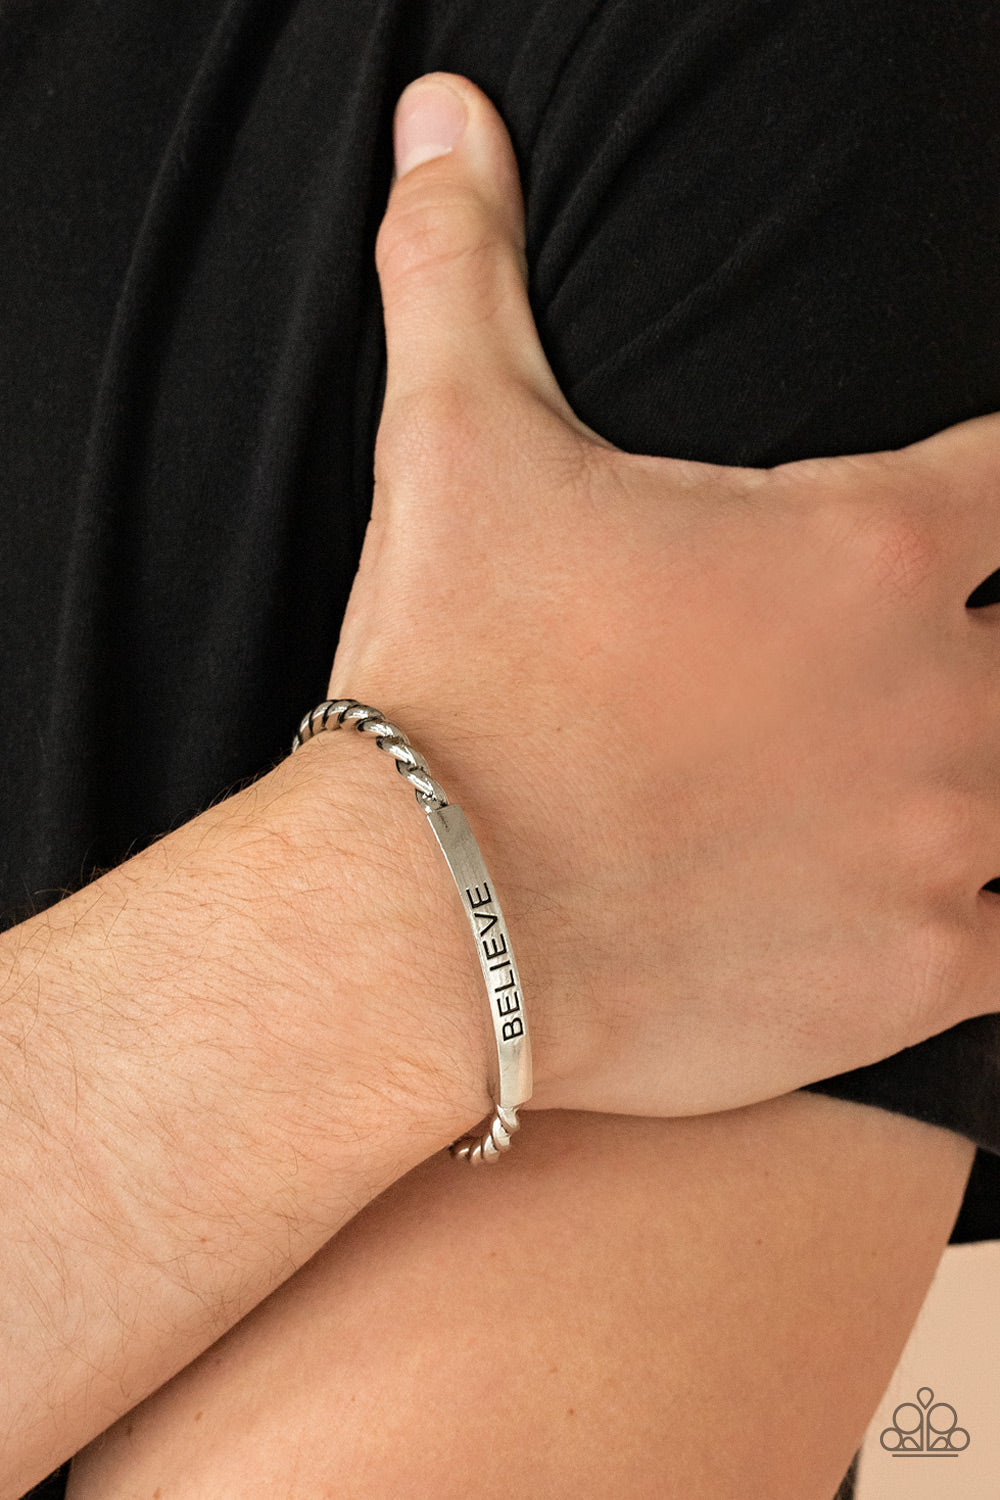 Paparazzi Keep Calm and Believe - Silver - Inspirational Bracelet - $5 Jewelry with Ashley Swint